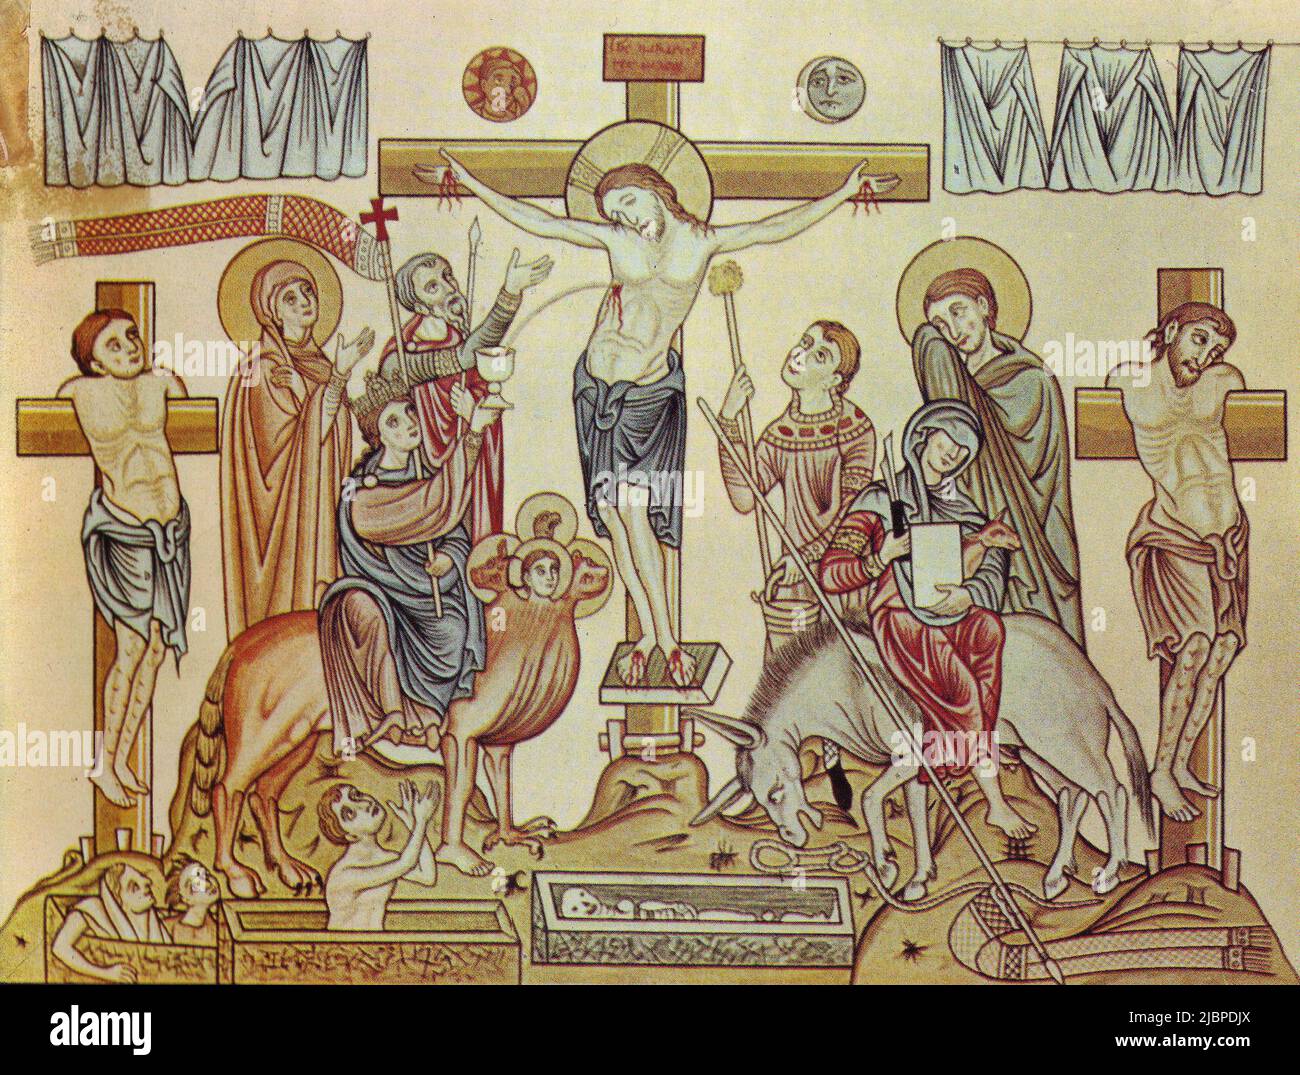 Crocifissione di Gesù di Nazareth, un'illustrazione medievale del 12th secolo dall'Hortus deliciarum di Herrad di Landsberg Foto Stock